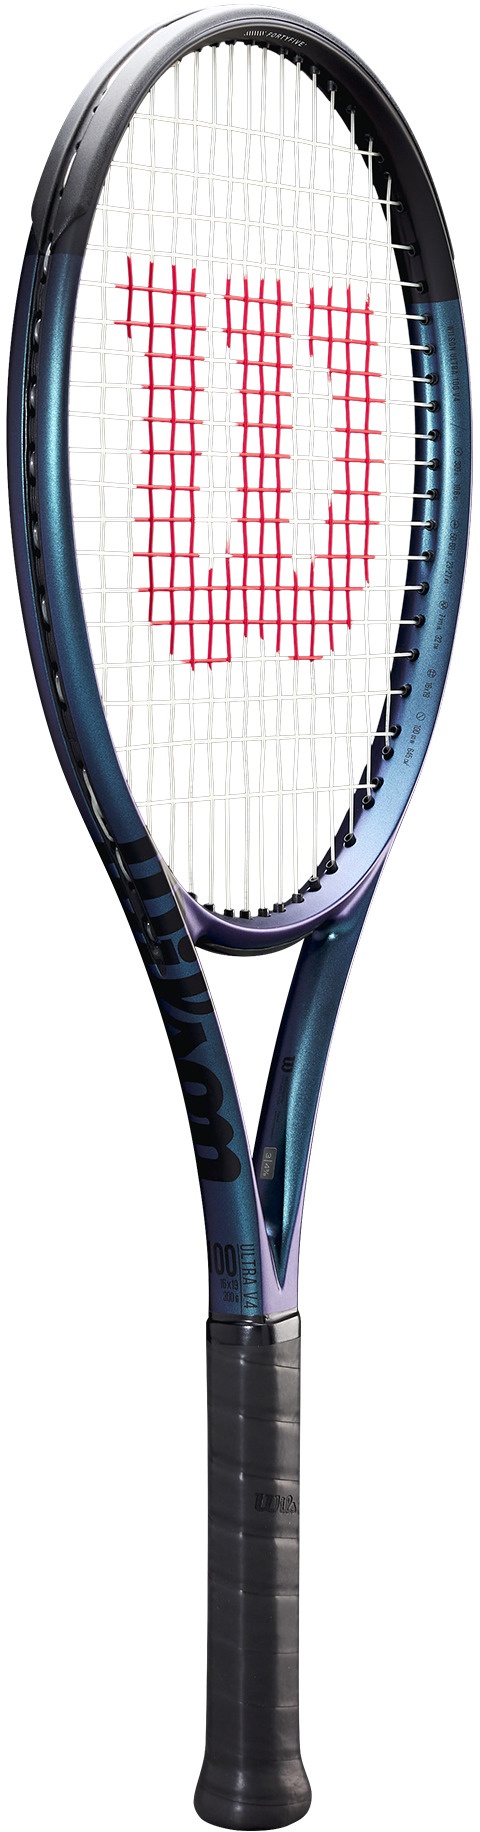 Енергична ракета за тенис